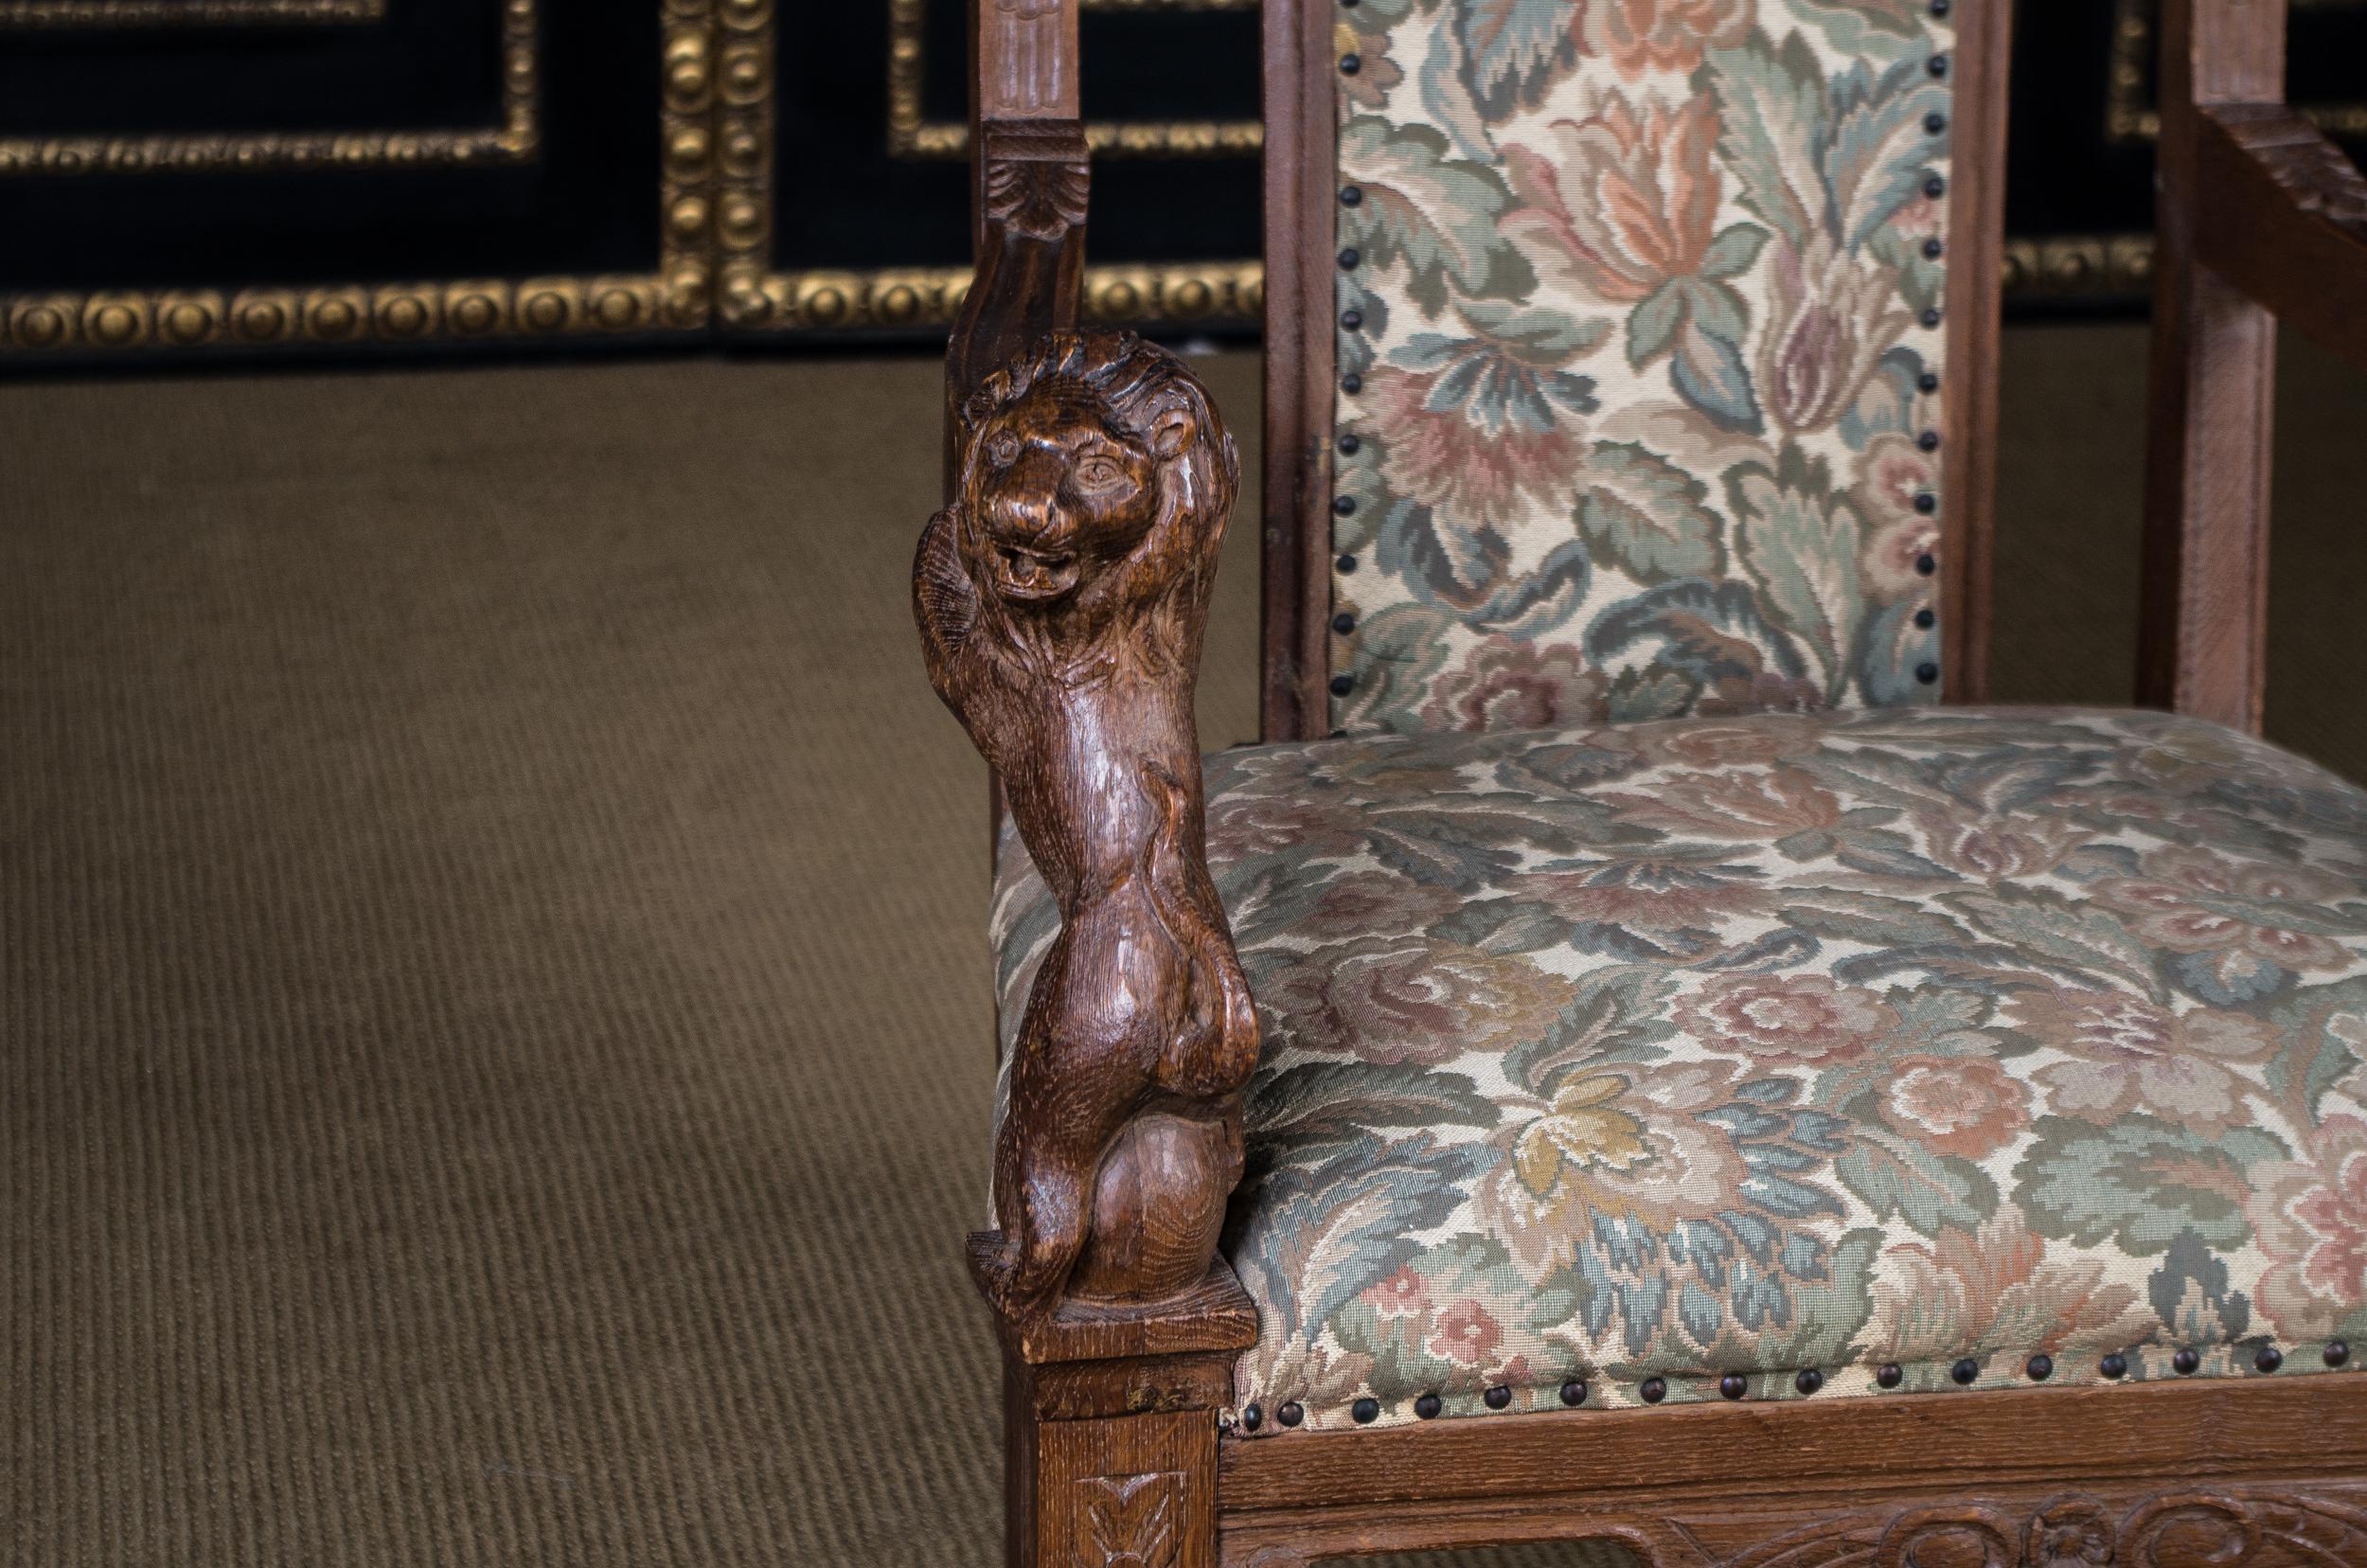 19th Century Historical Antique Neo Renaissance Armchair Lion Armrests, circa 1850s-1870s oak